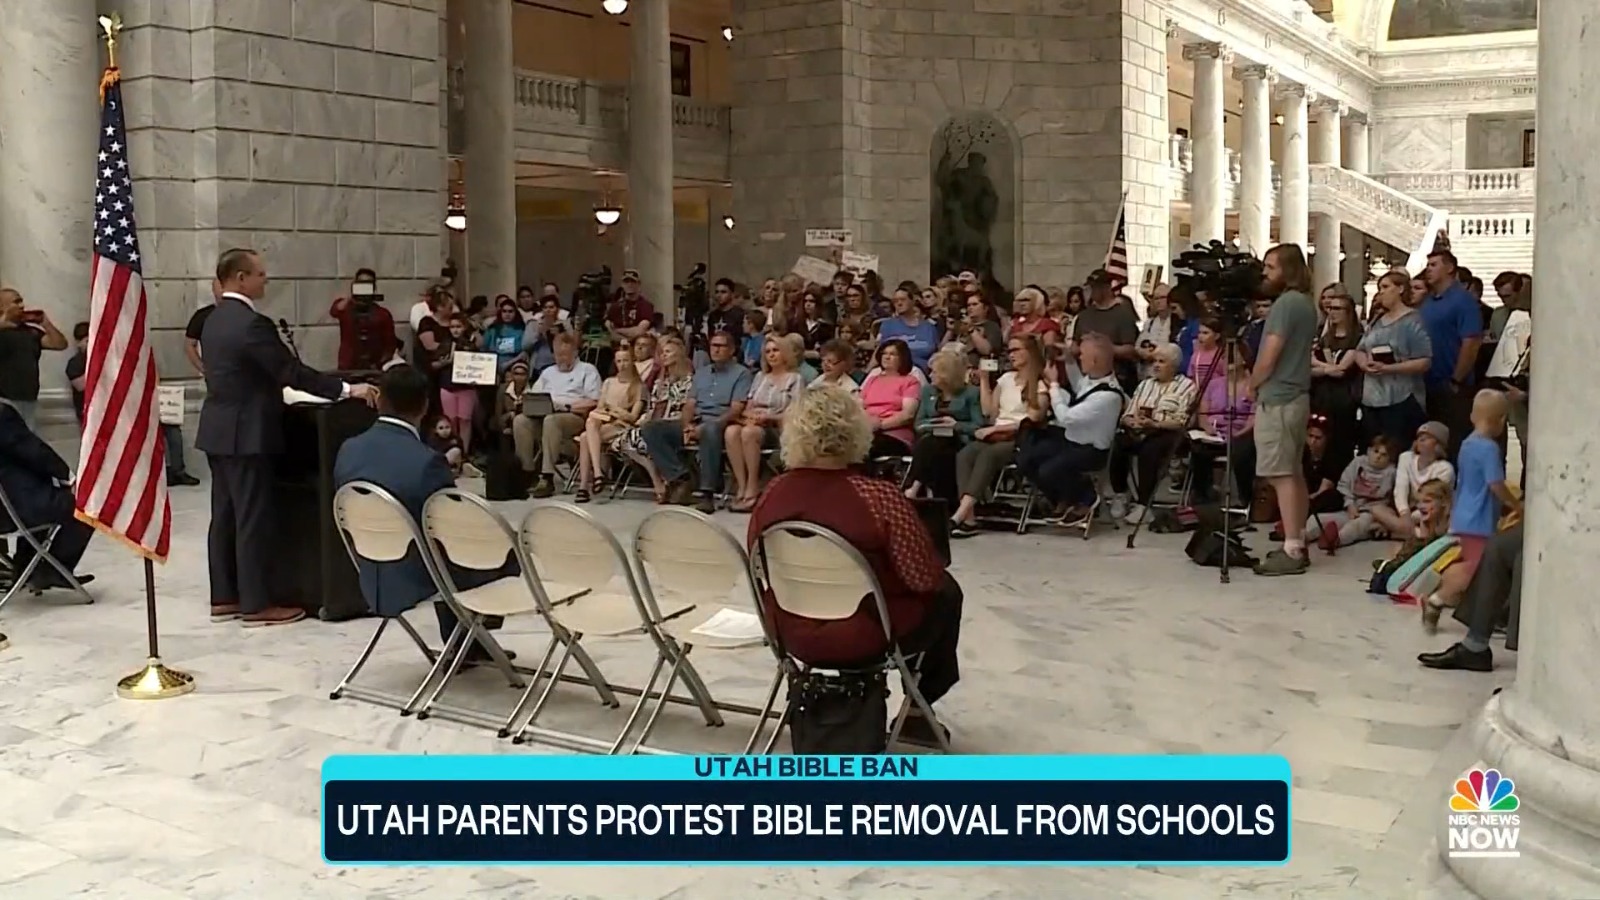 Pais protestam contra decisão de banir a Bíblia em escolas nos EUA 